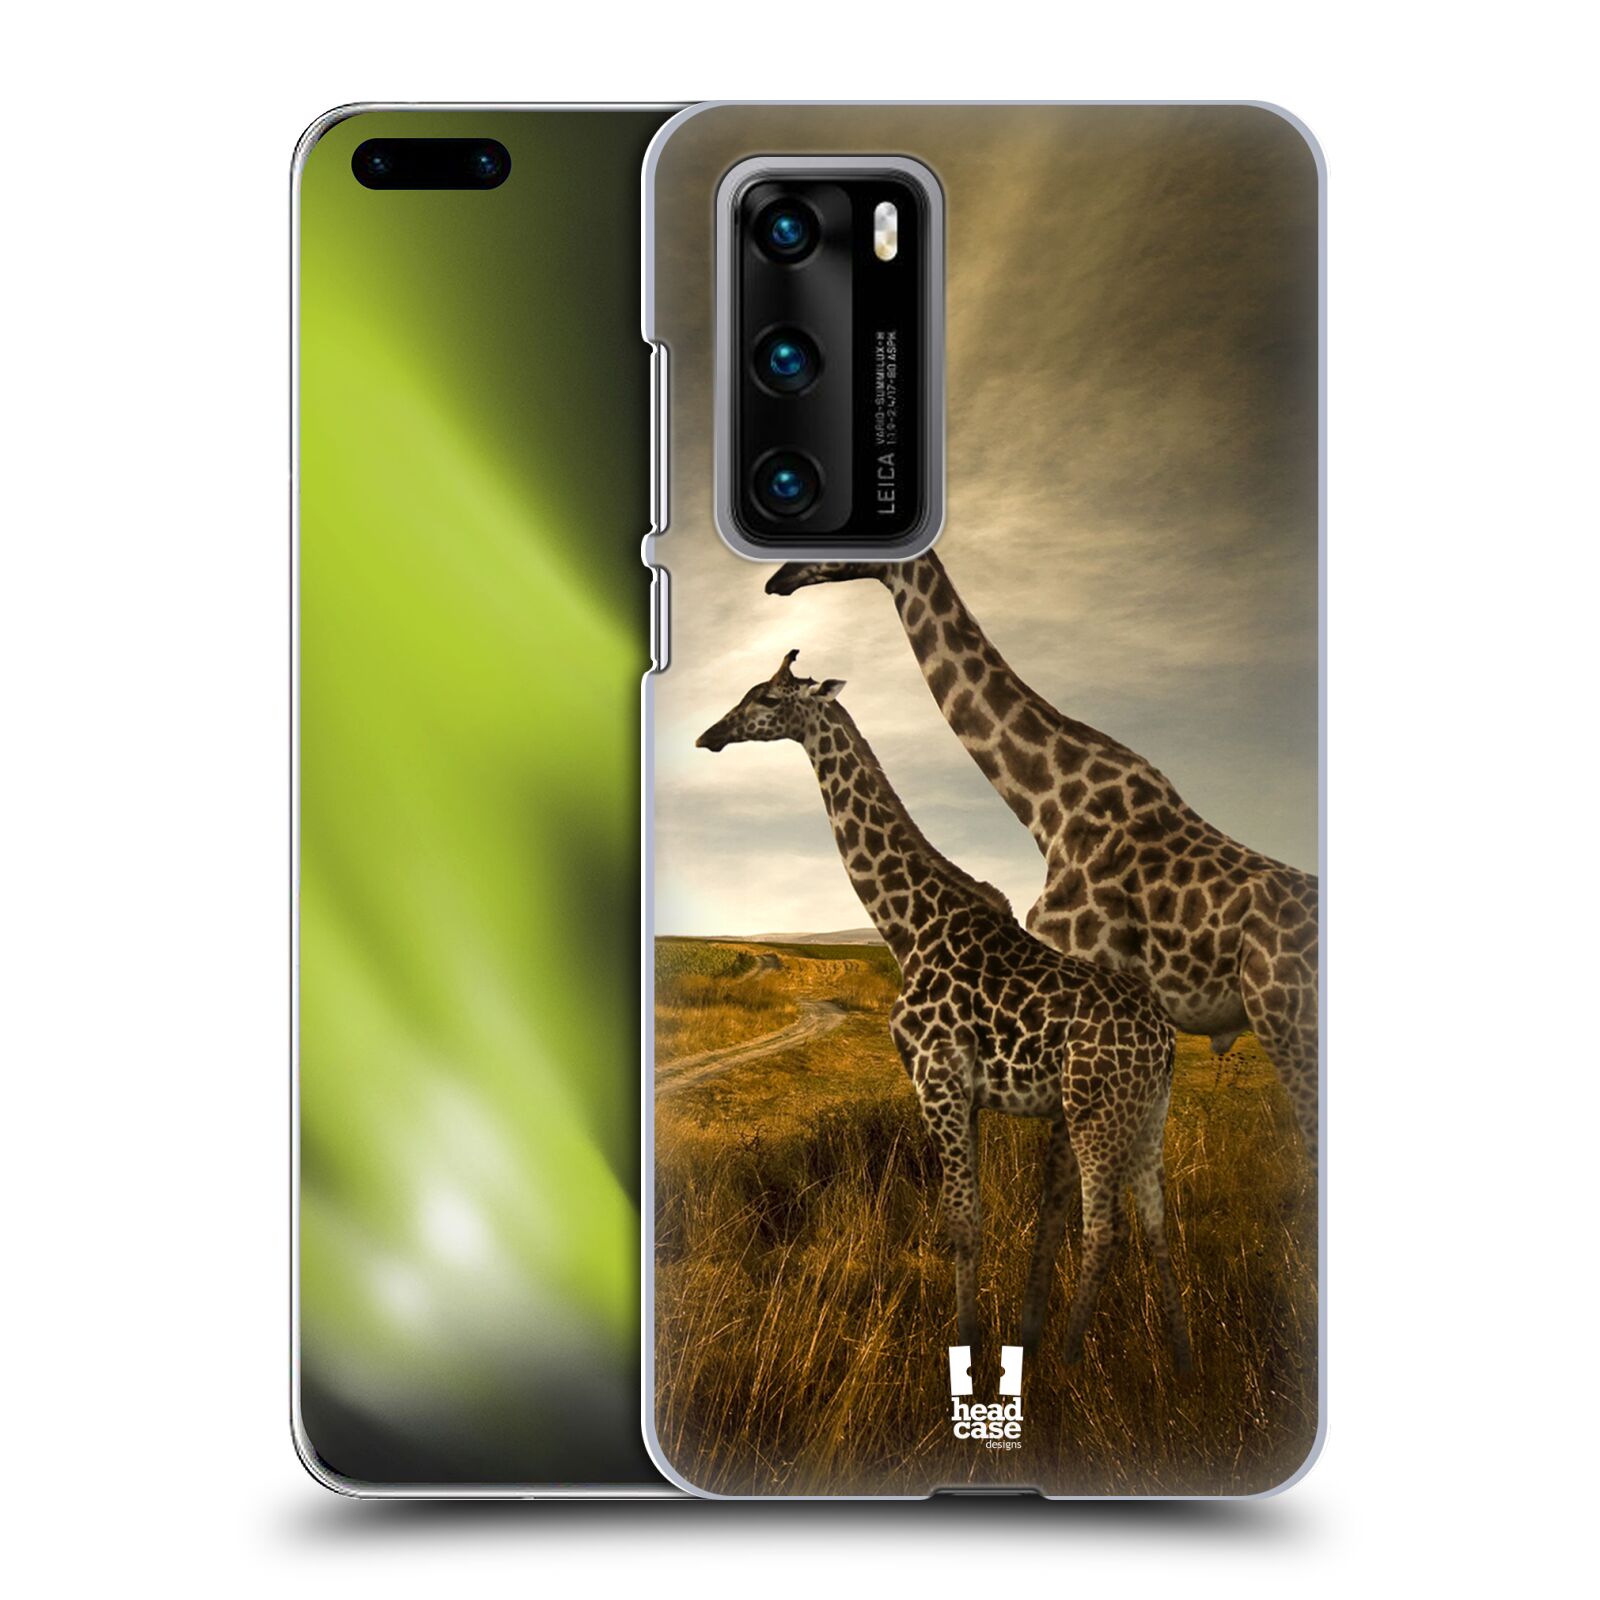 Zadní obal pro mobil Huawei P40 - HEAD CASE - Svět zvířat žirafy